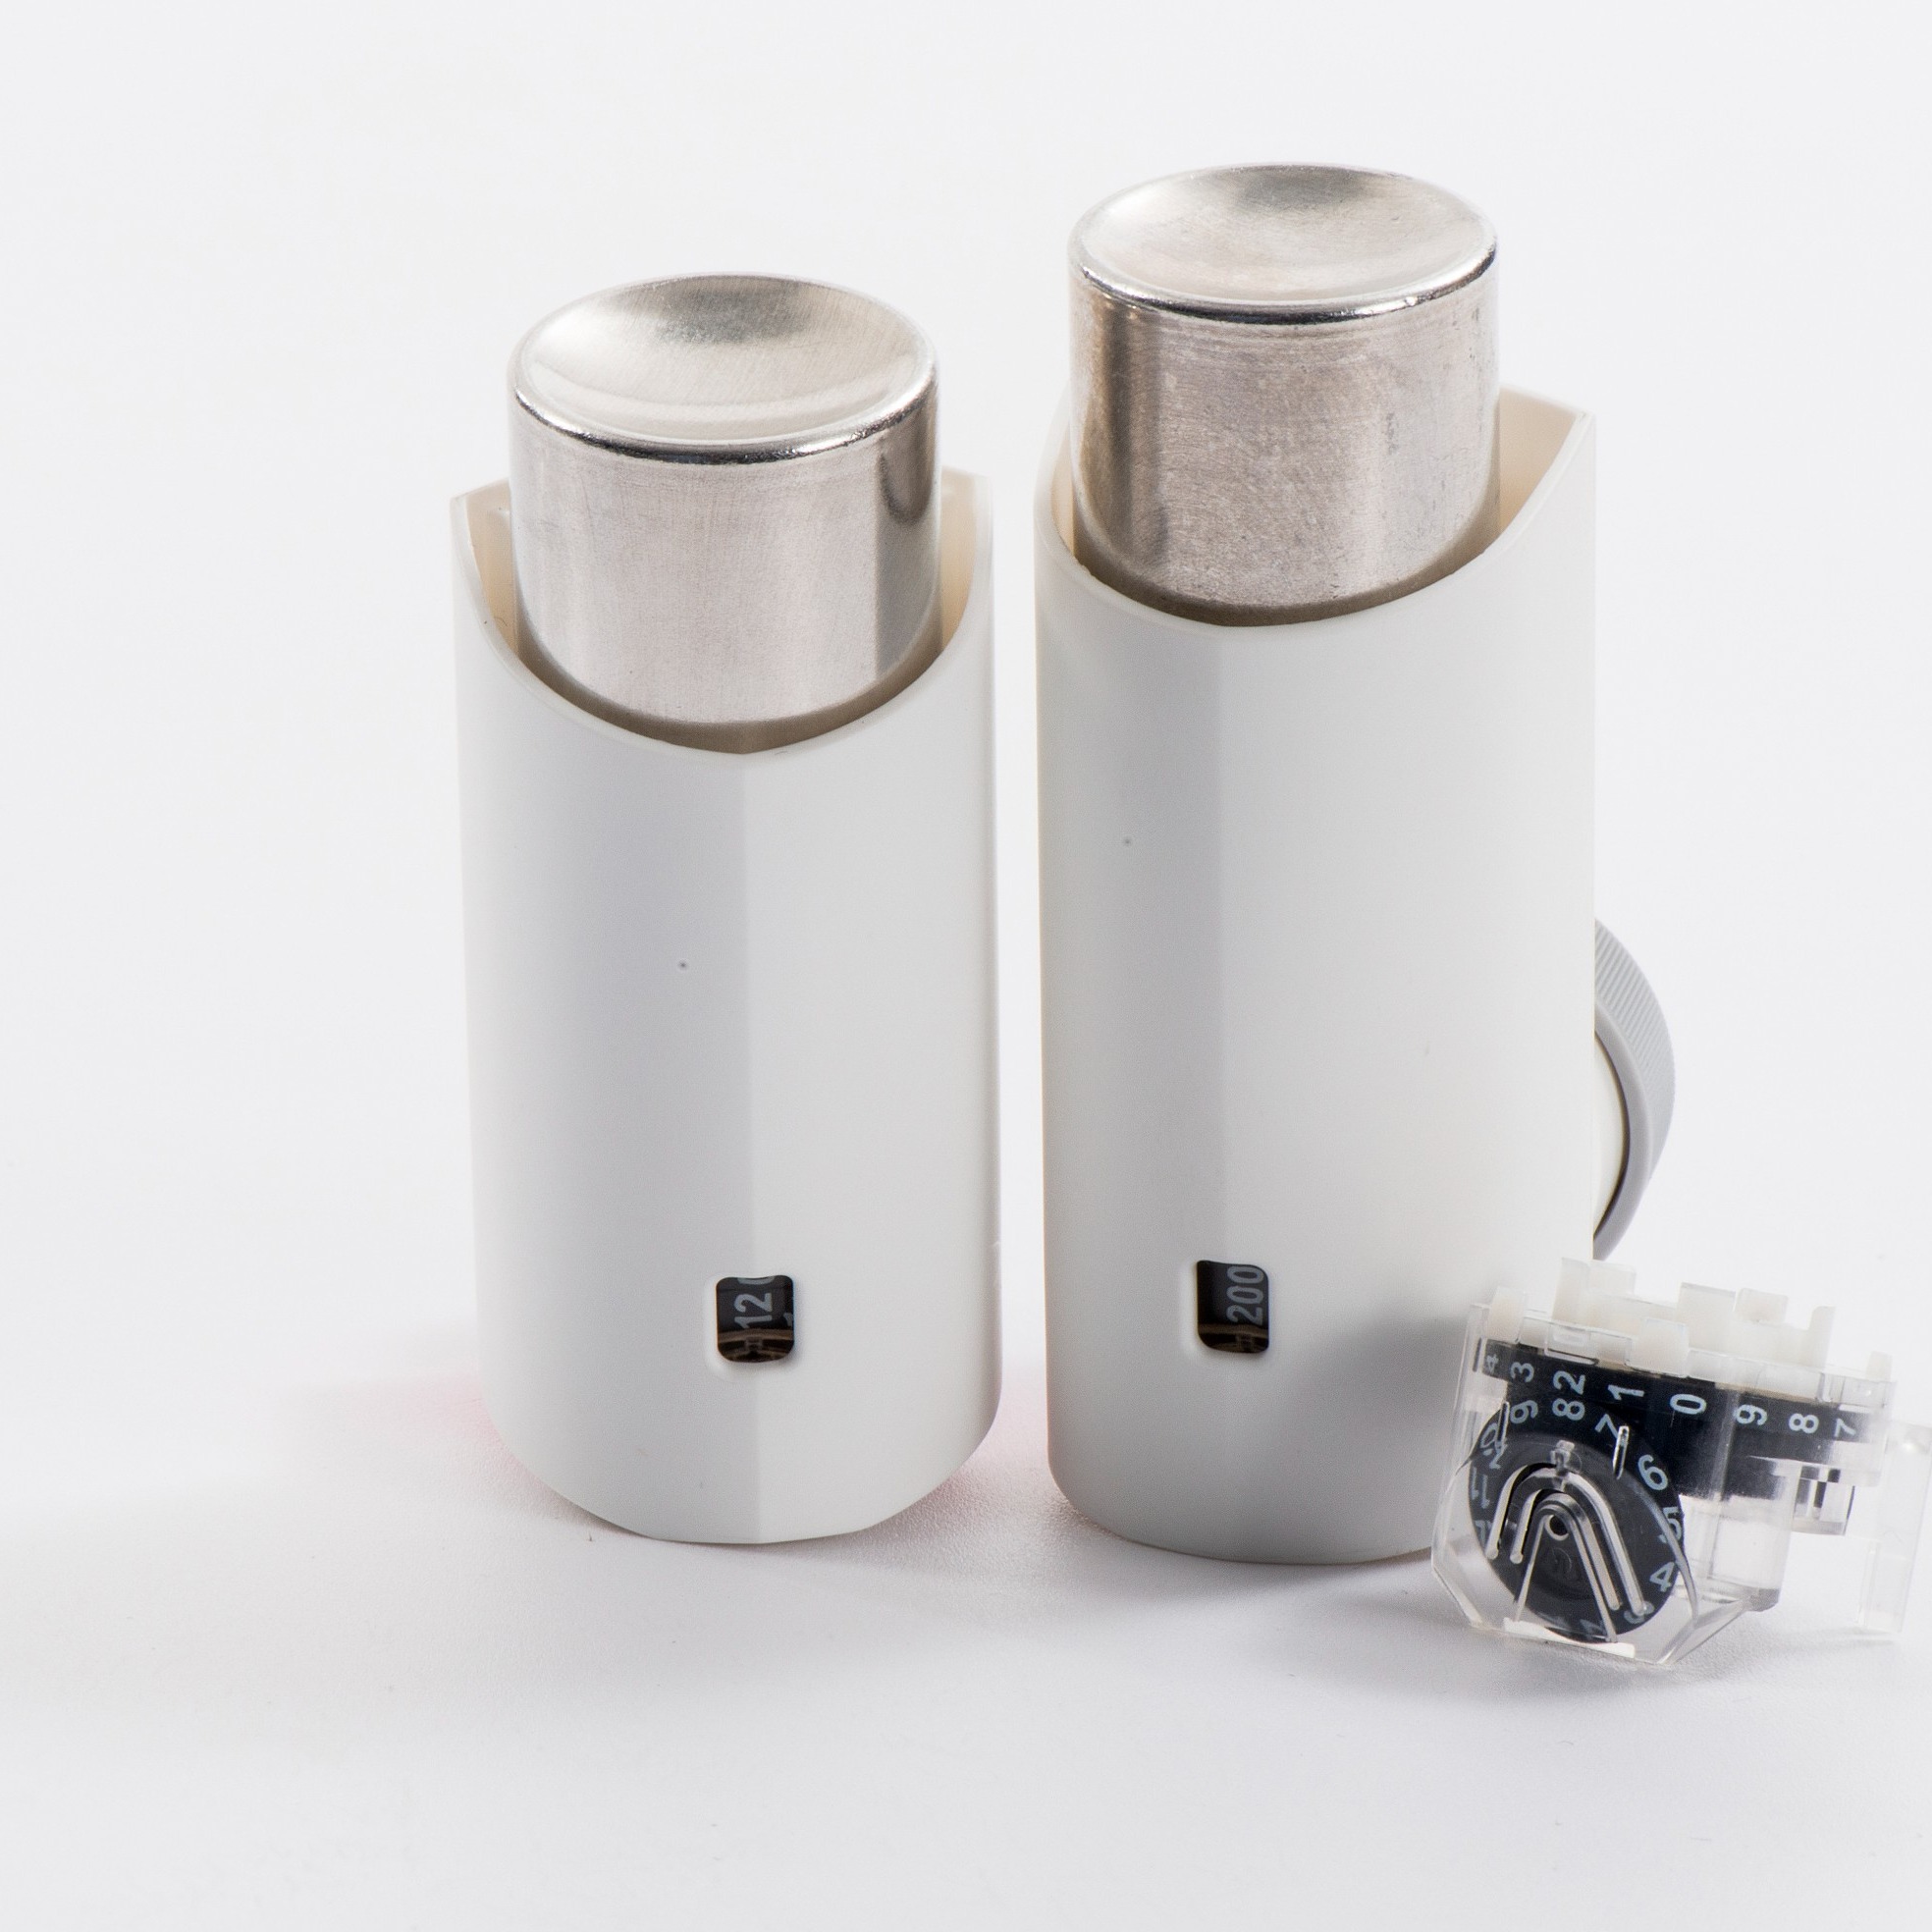 Metered-dose Inhaler (MDI) Actuators